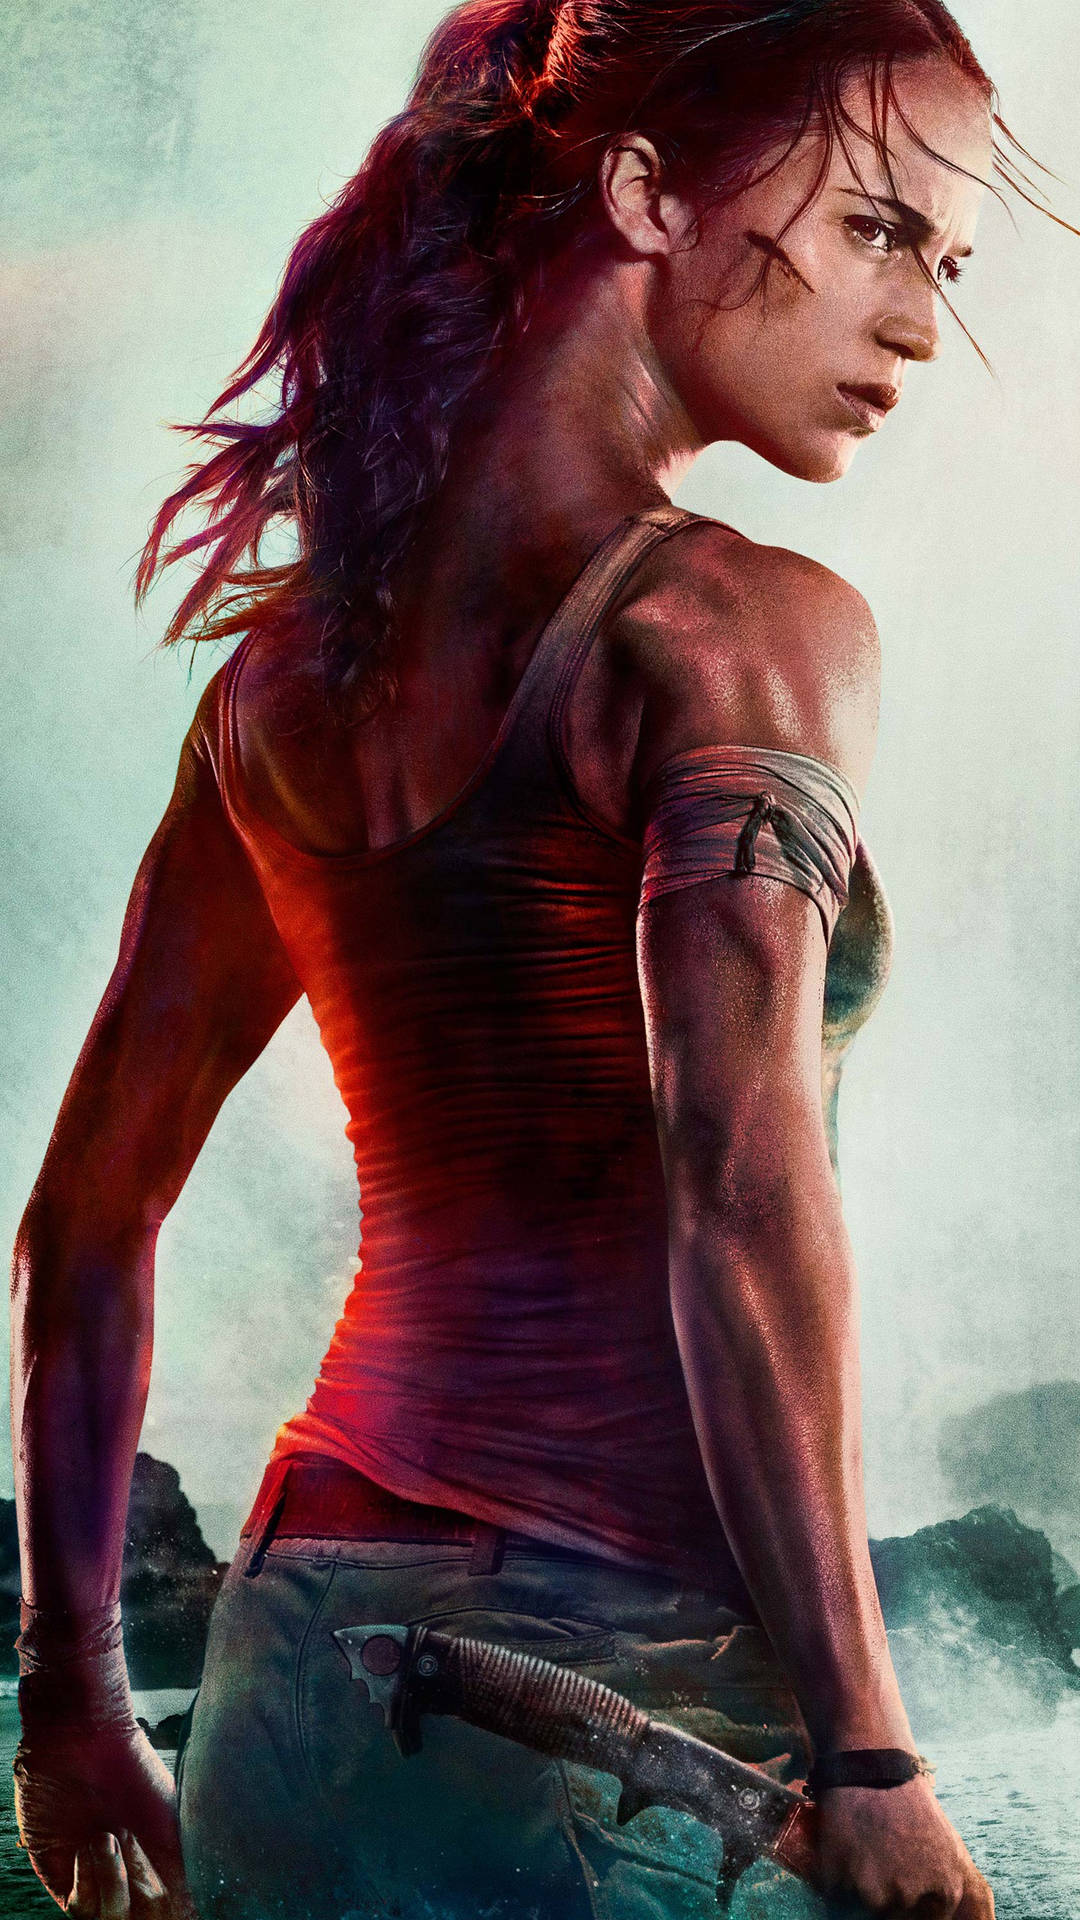 Sexylara Croft Tomb Raider Für Das Iphone Wallpaper